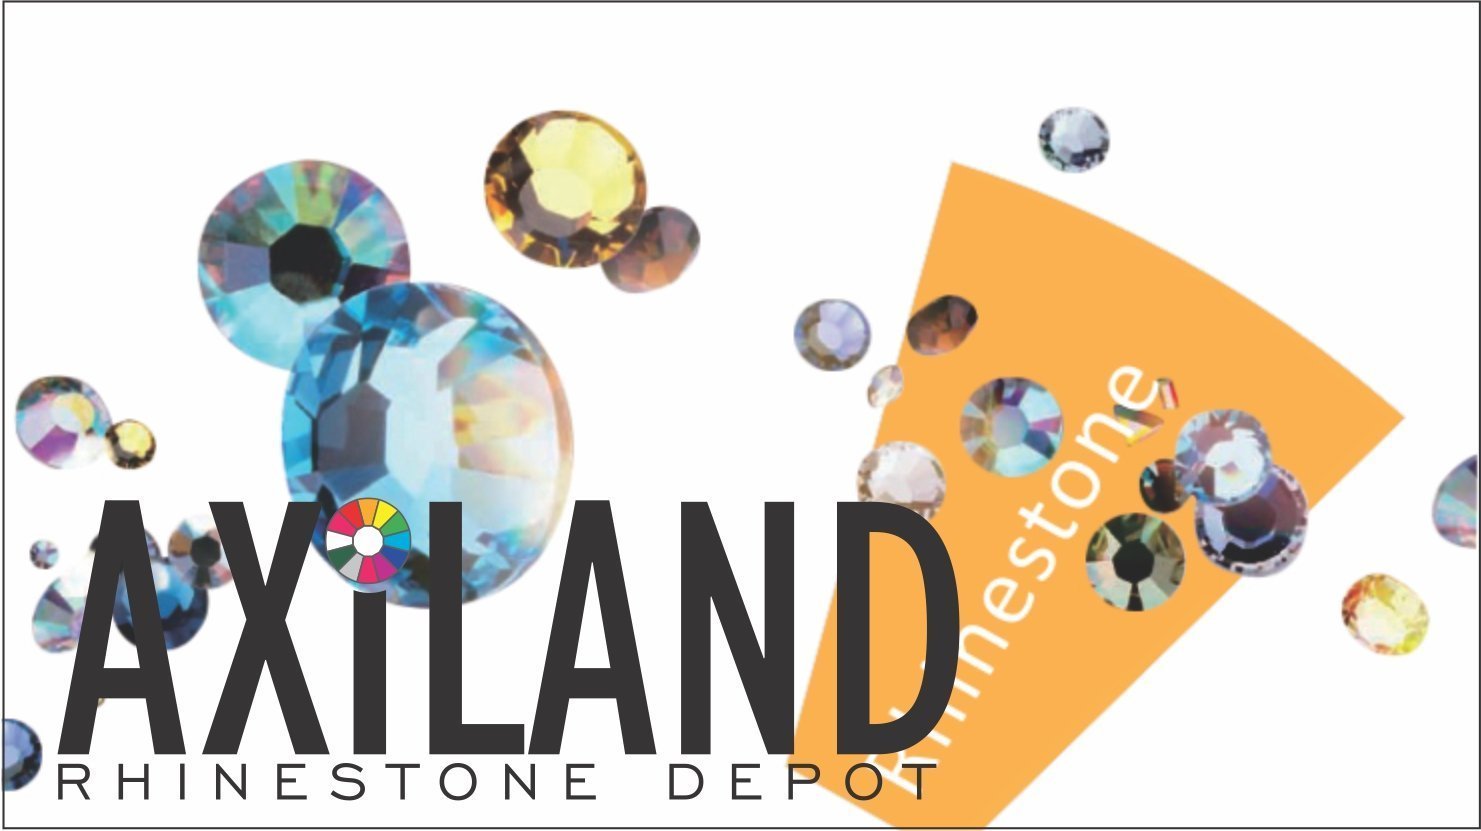 White / Crystal Clear / Crystal AB Elastic Rhinestone X Fabric – Axiland  Rhinestone Depot